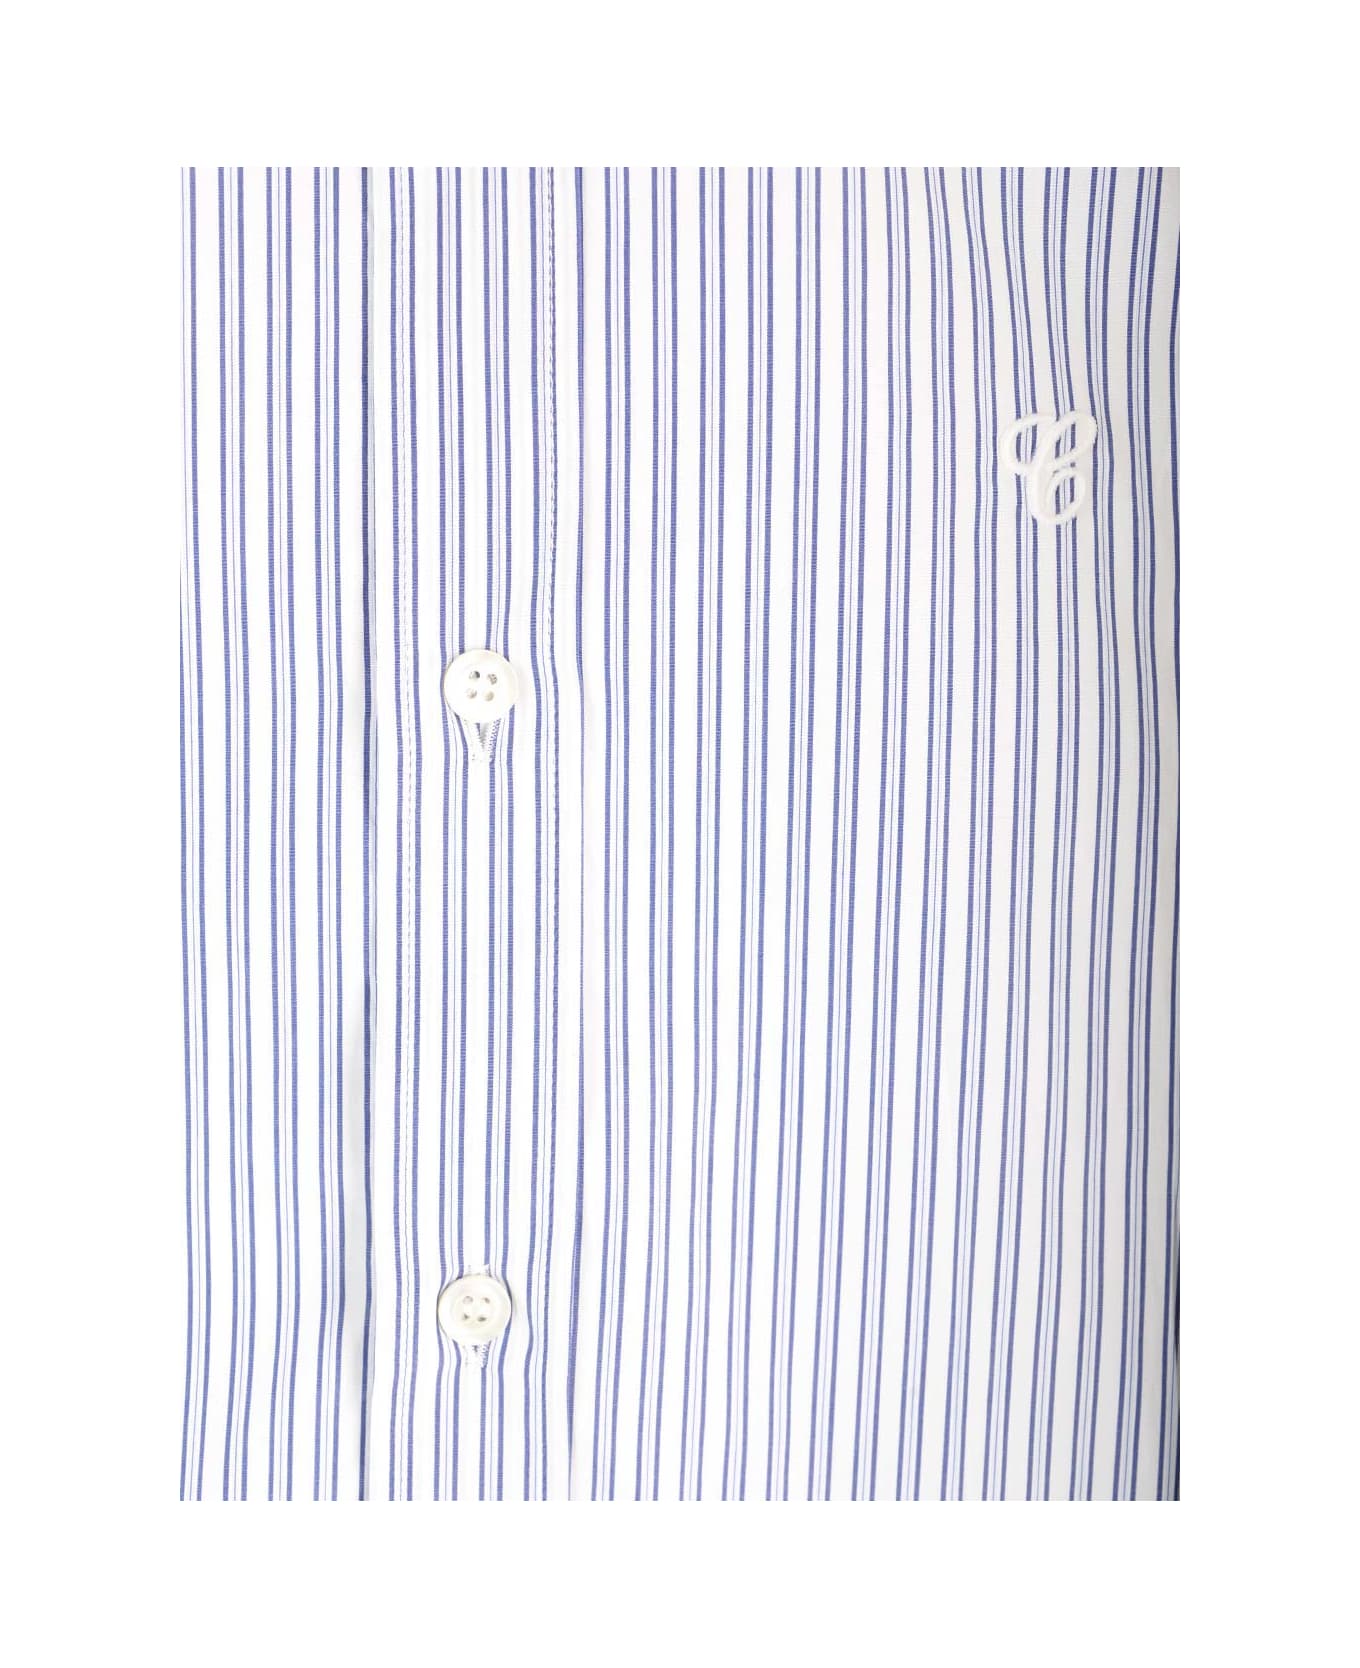 Maison Margiela Striped Shirt - BLUE WHITE STRIPES